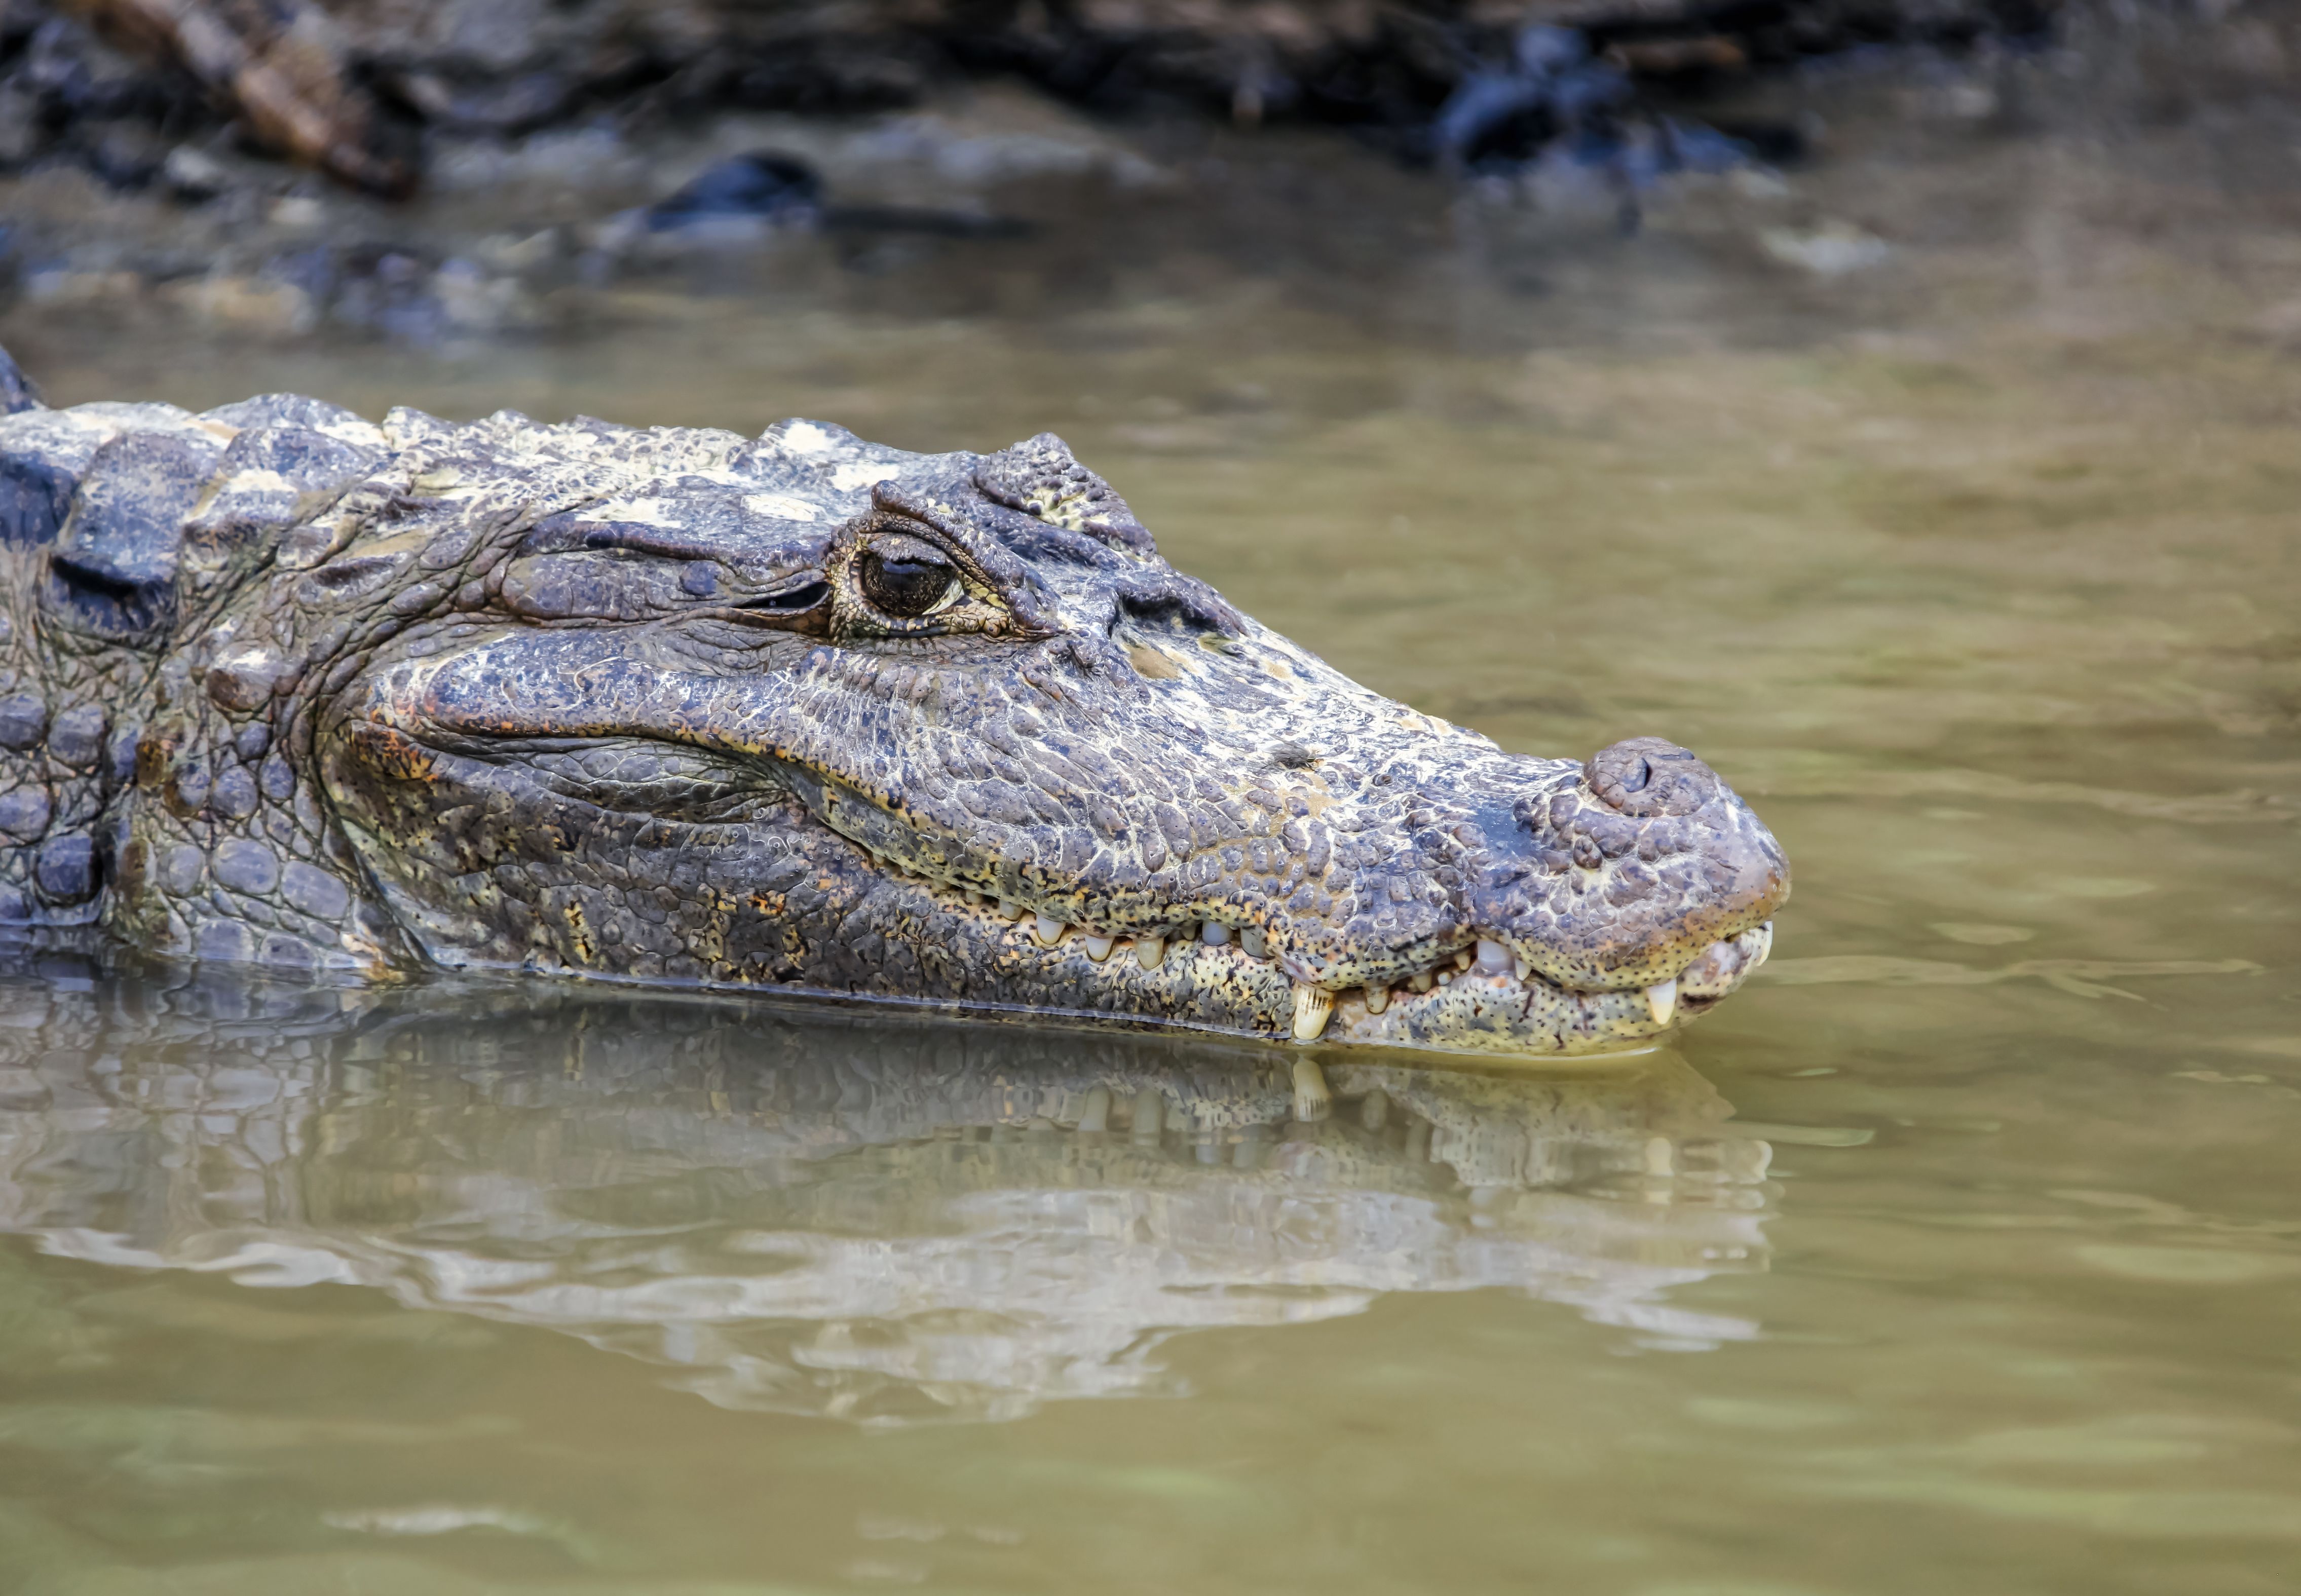 Rescate al límite: unos buzos buscan a una madre y su hijo en un estanque lleno de caimanes